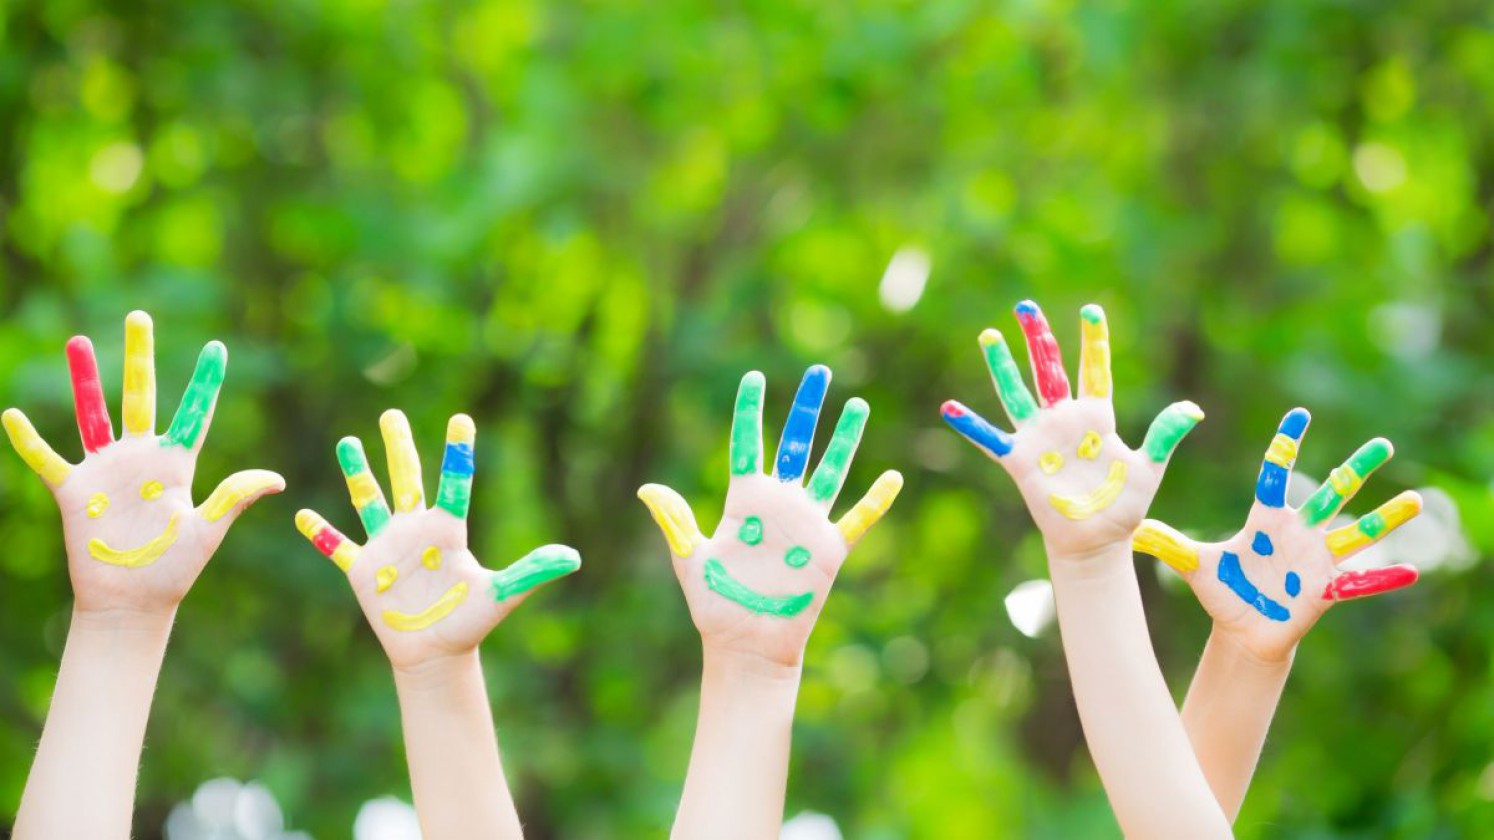 Kinderhände mit bunten Fingerfarben bemalt.